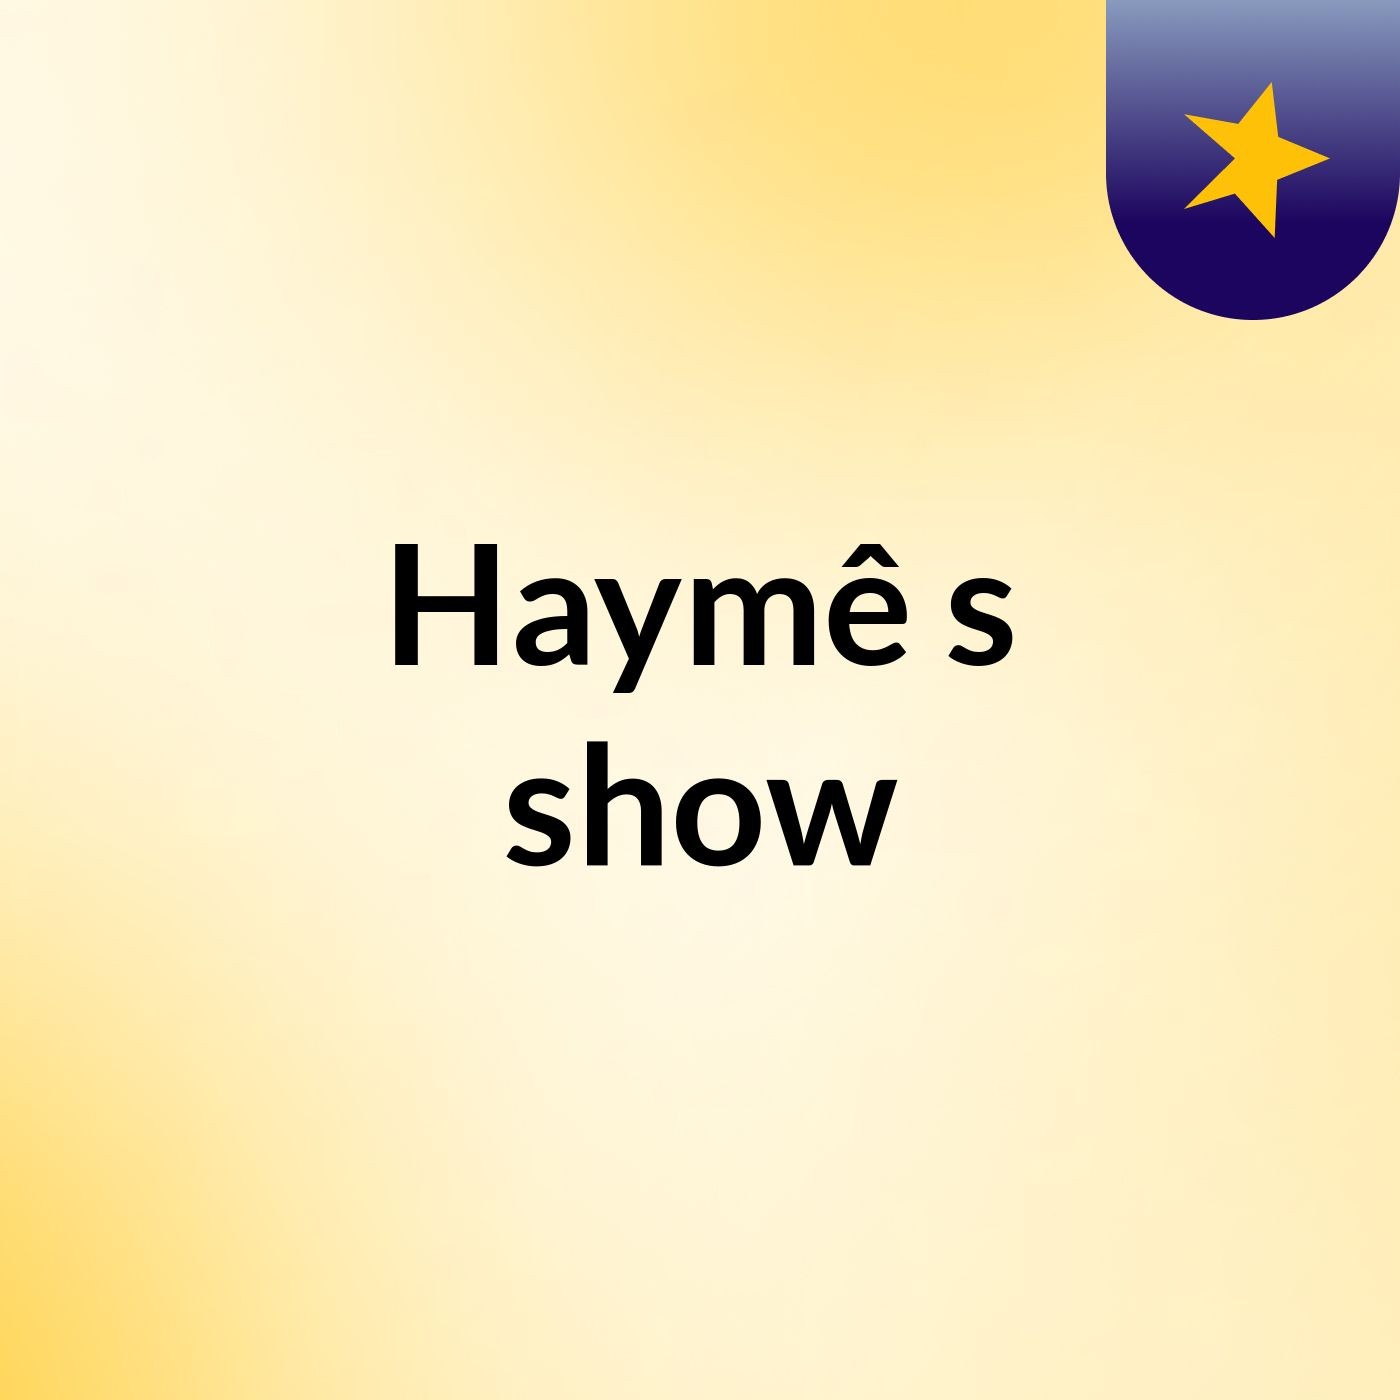 Haymê's show